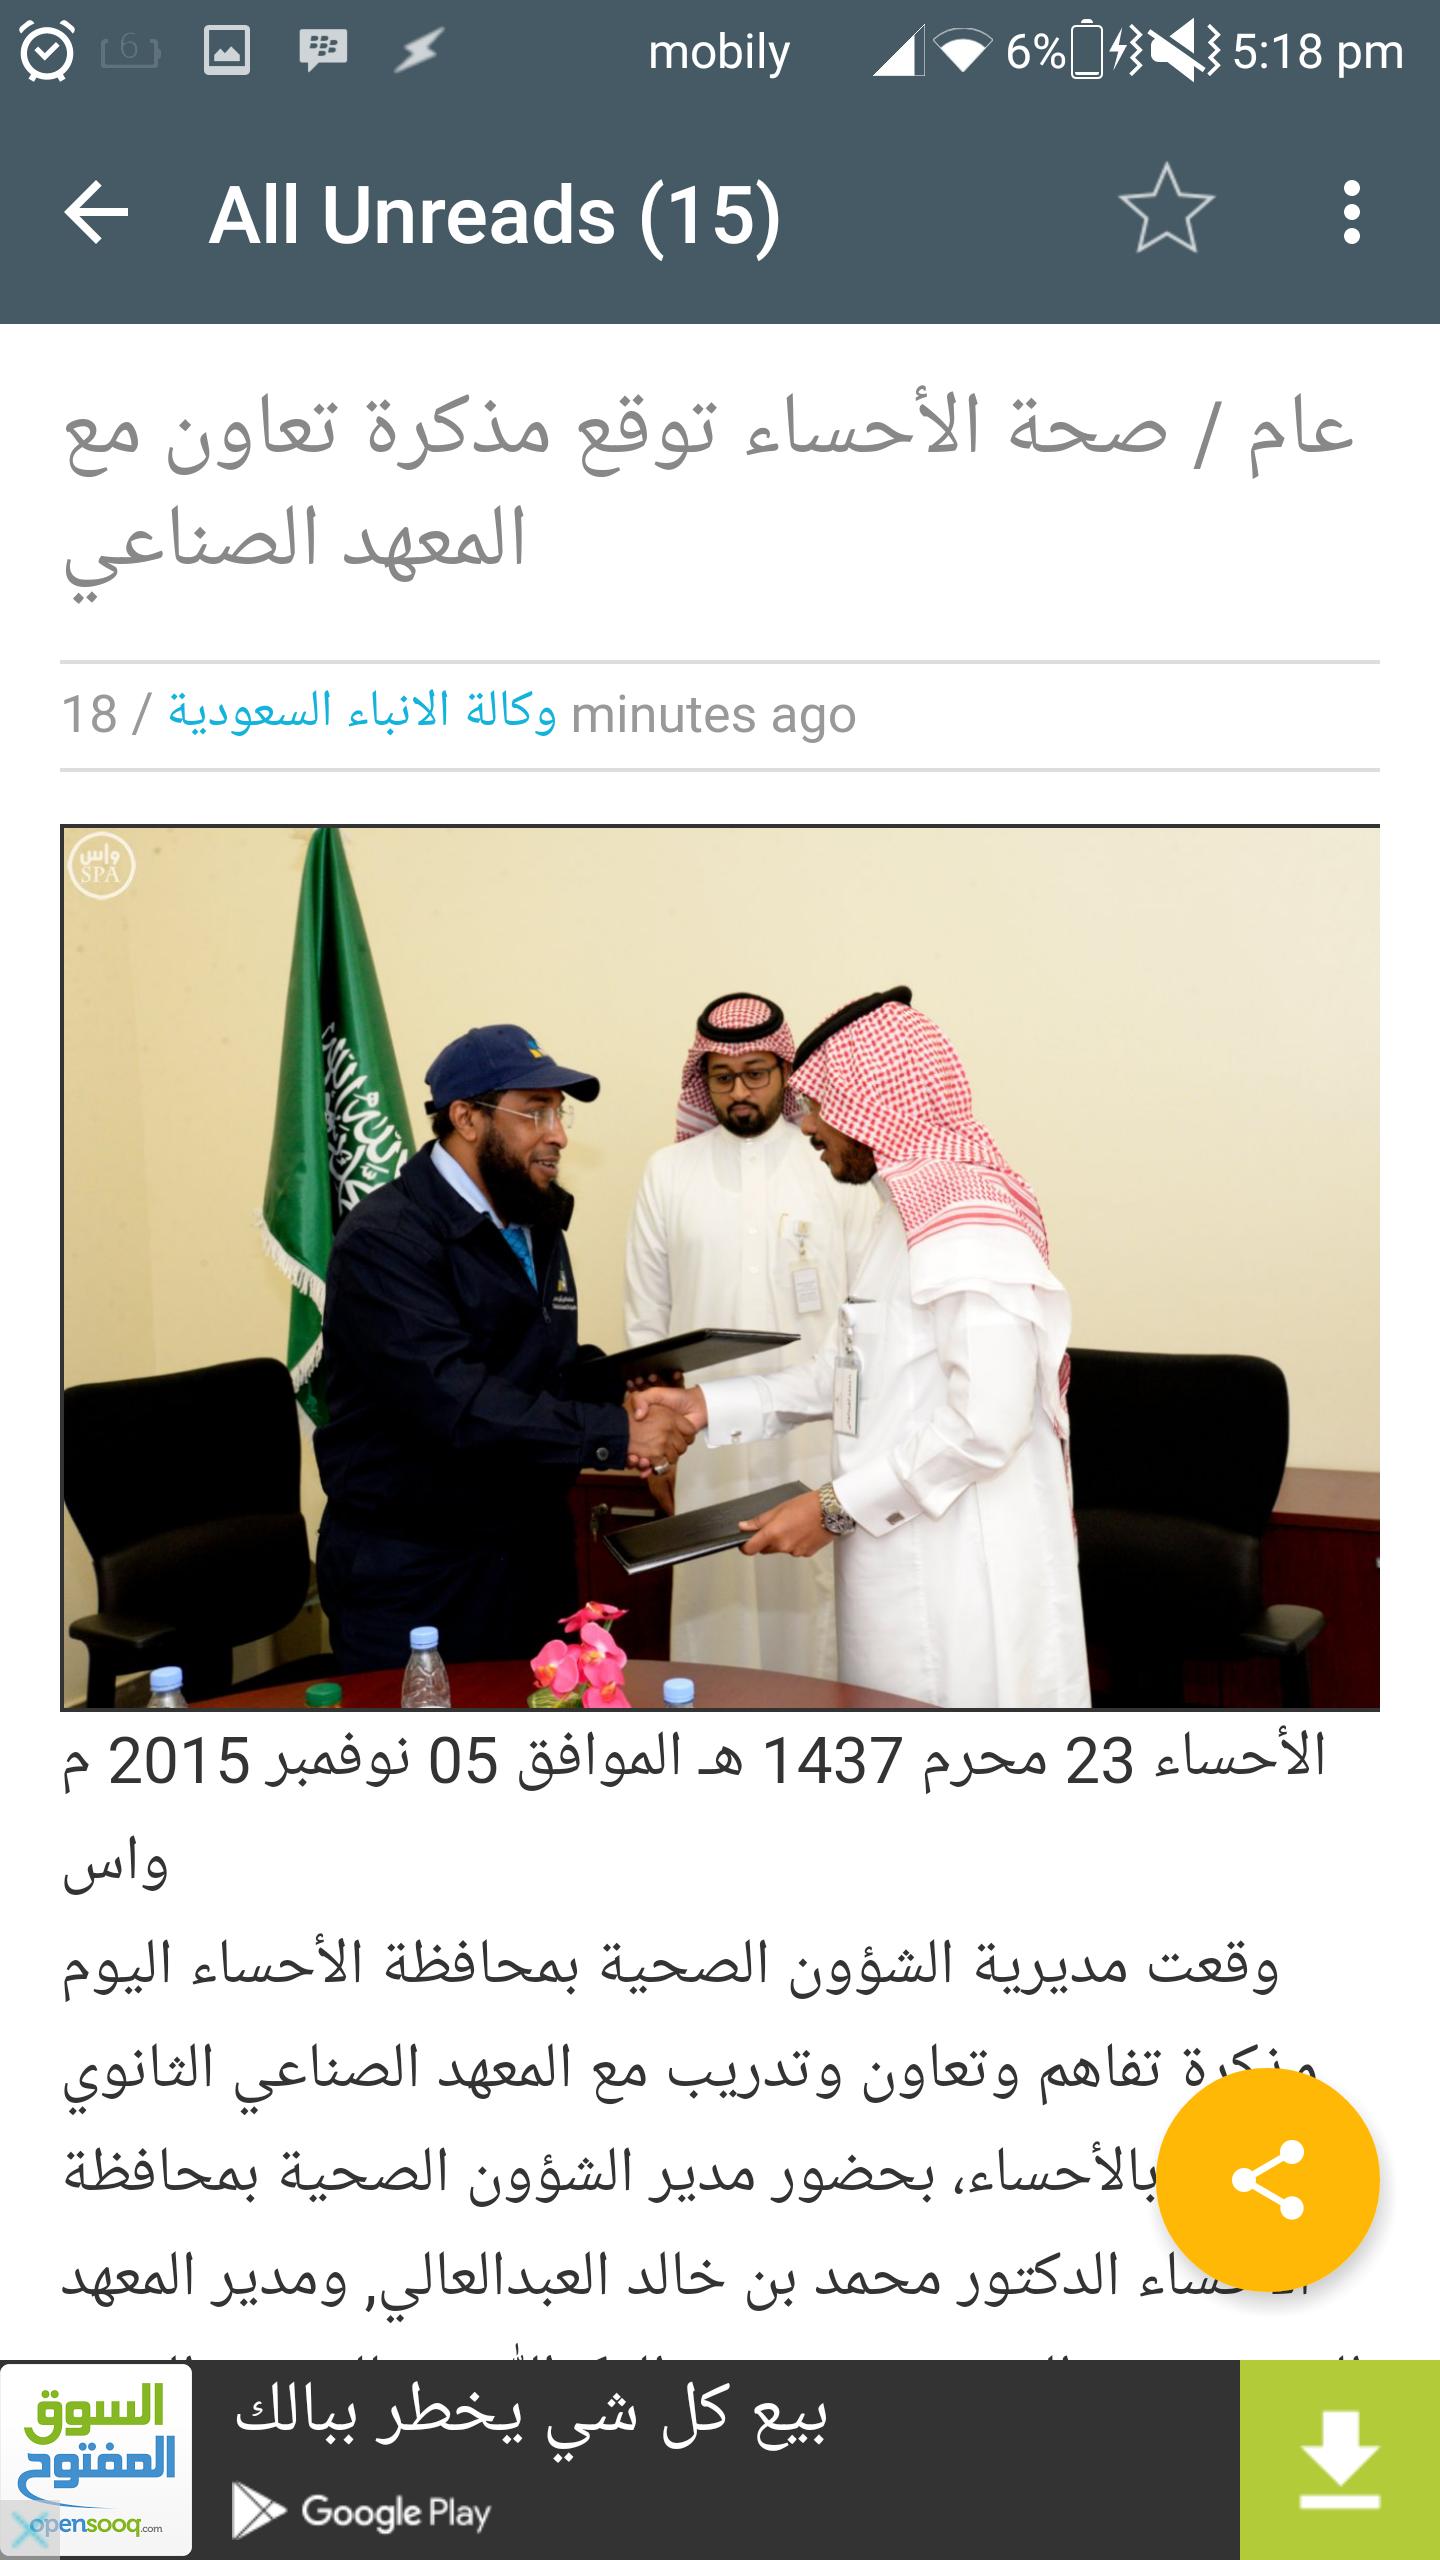 وكالة الأنباء السعودية - واس for Android - APK Download